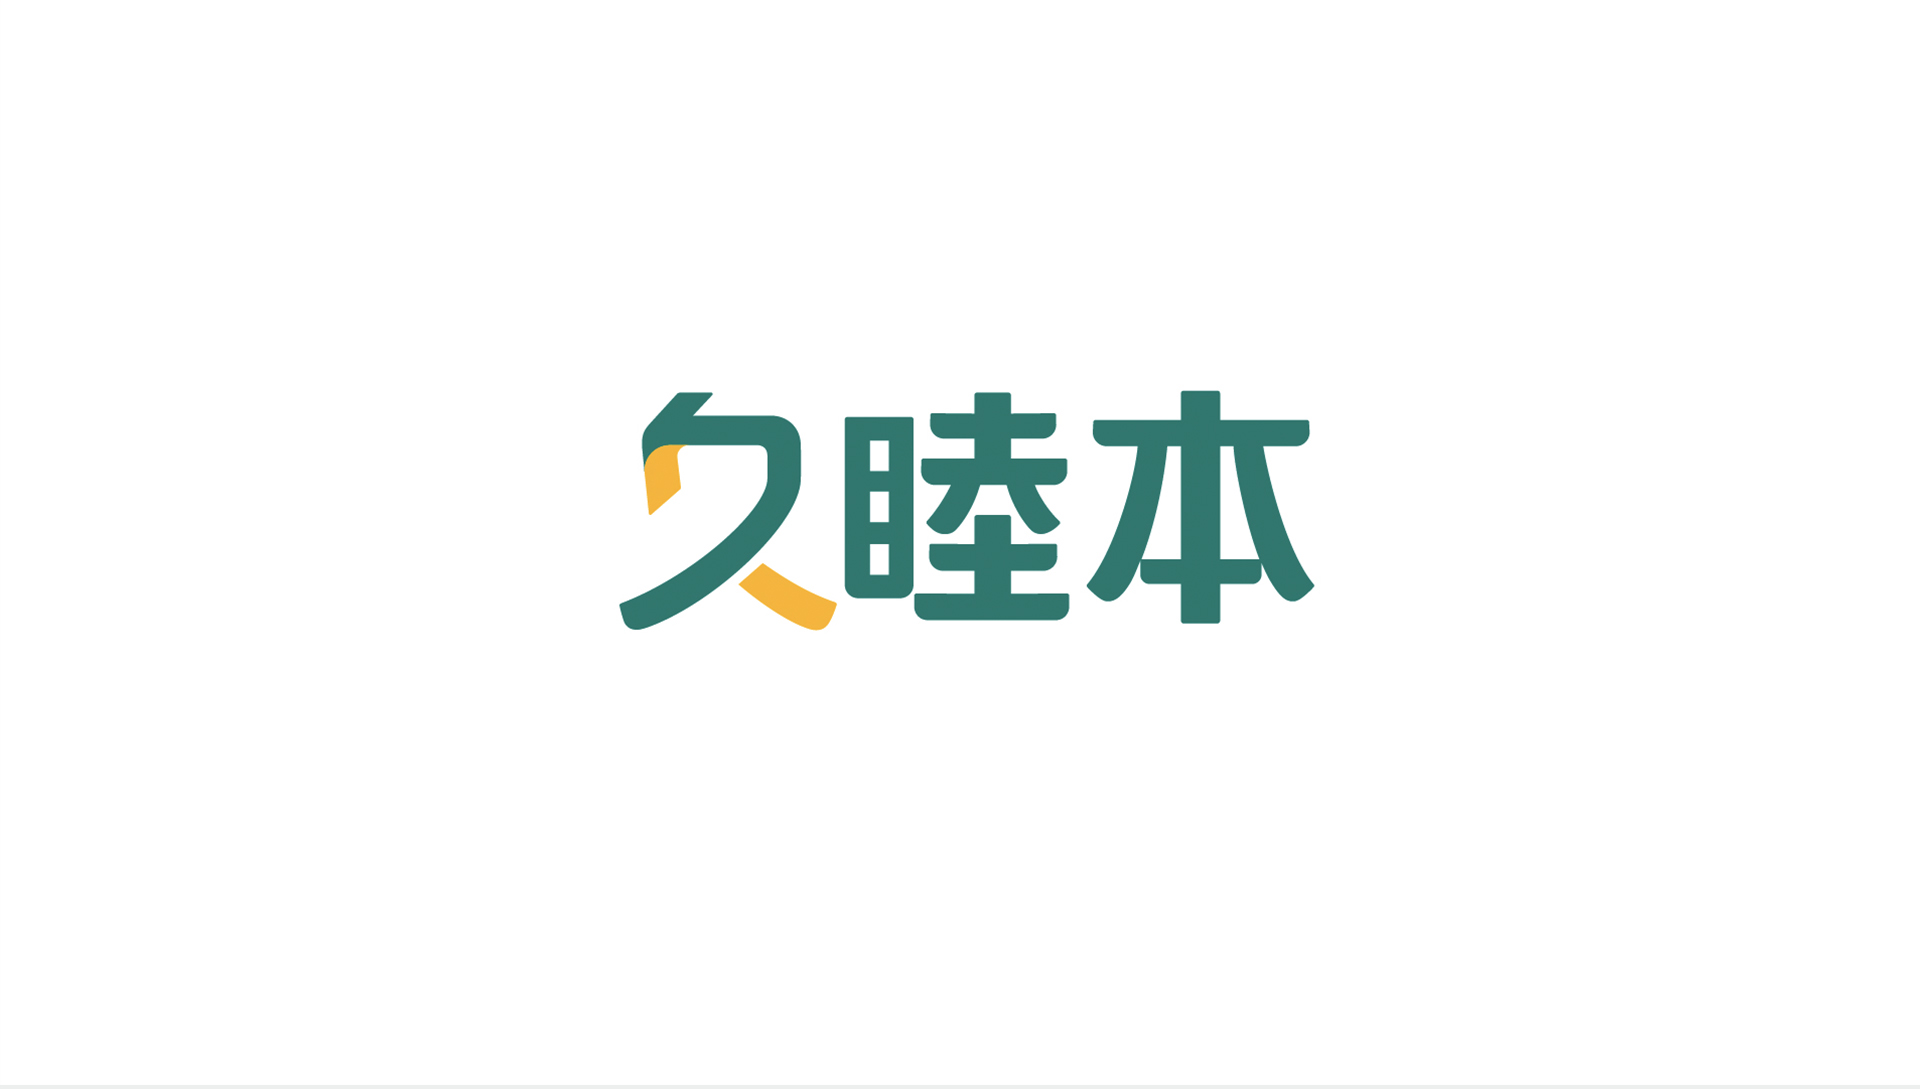 久睦本logo设计.jpg